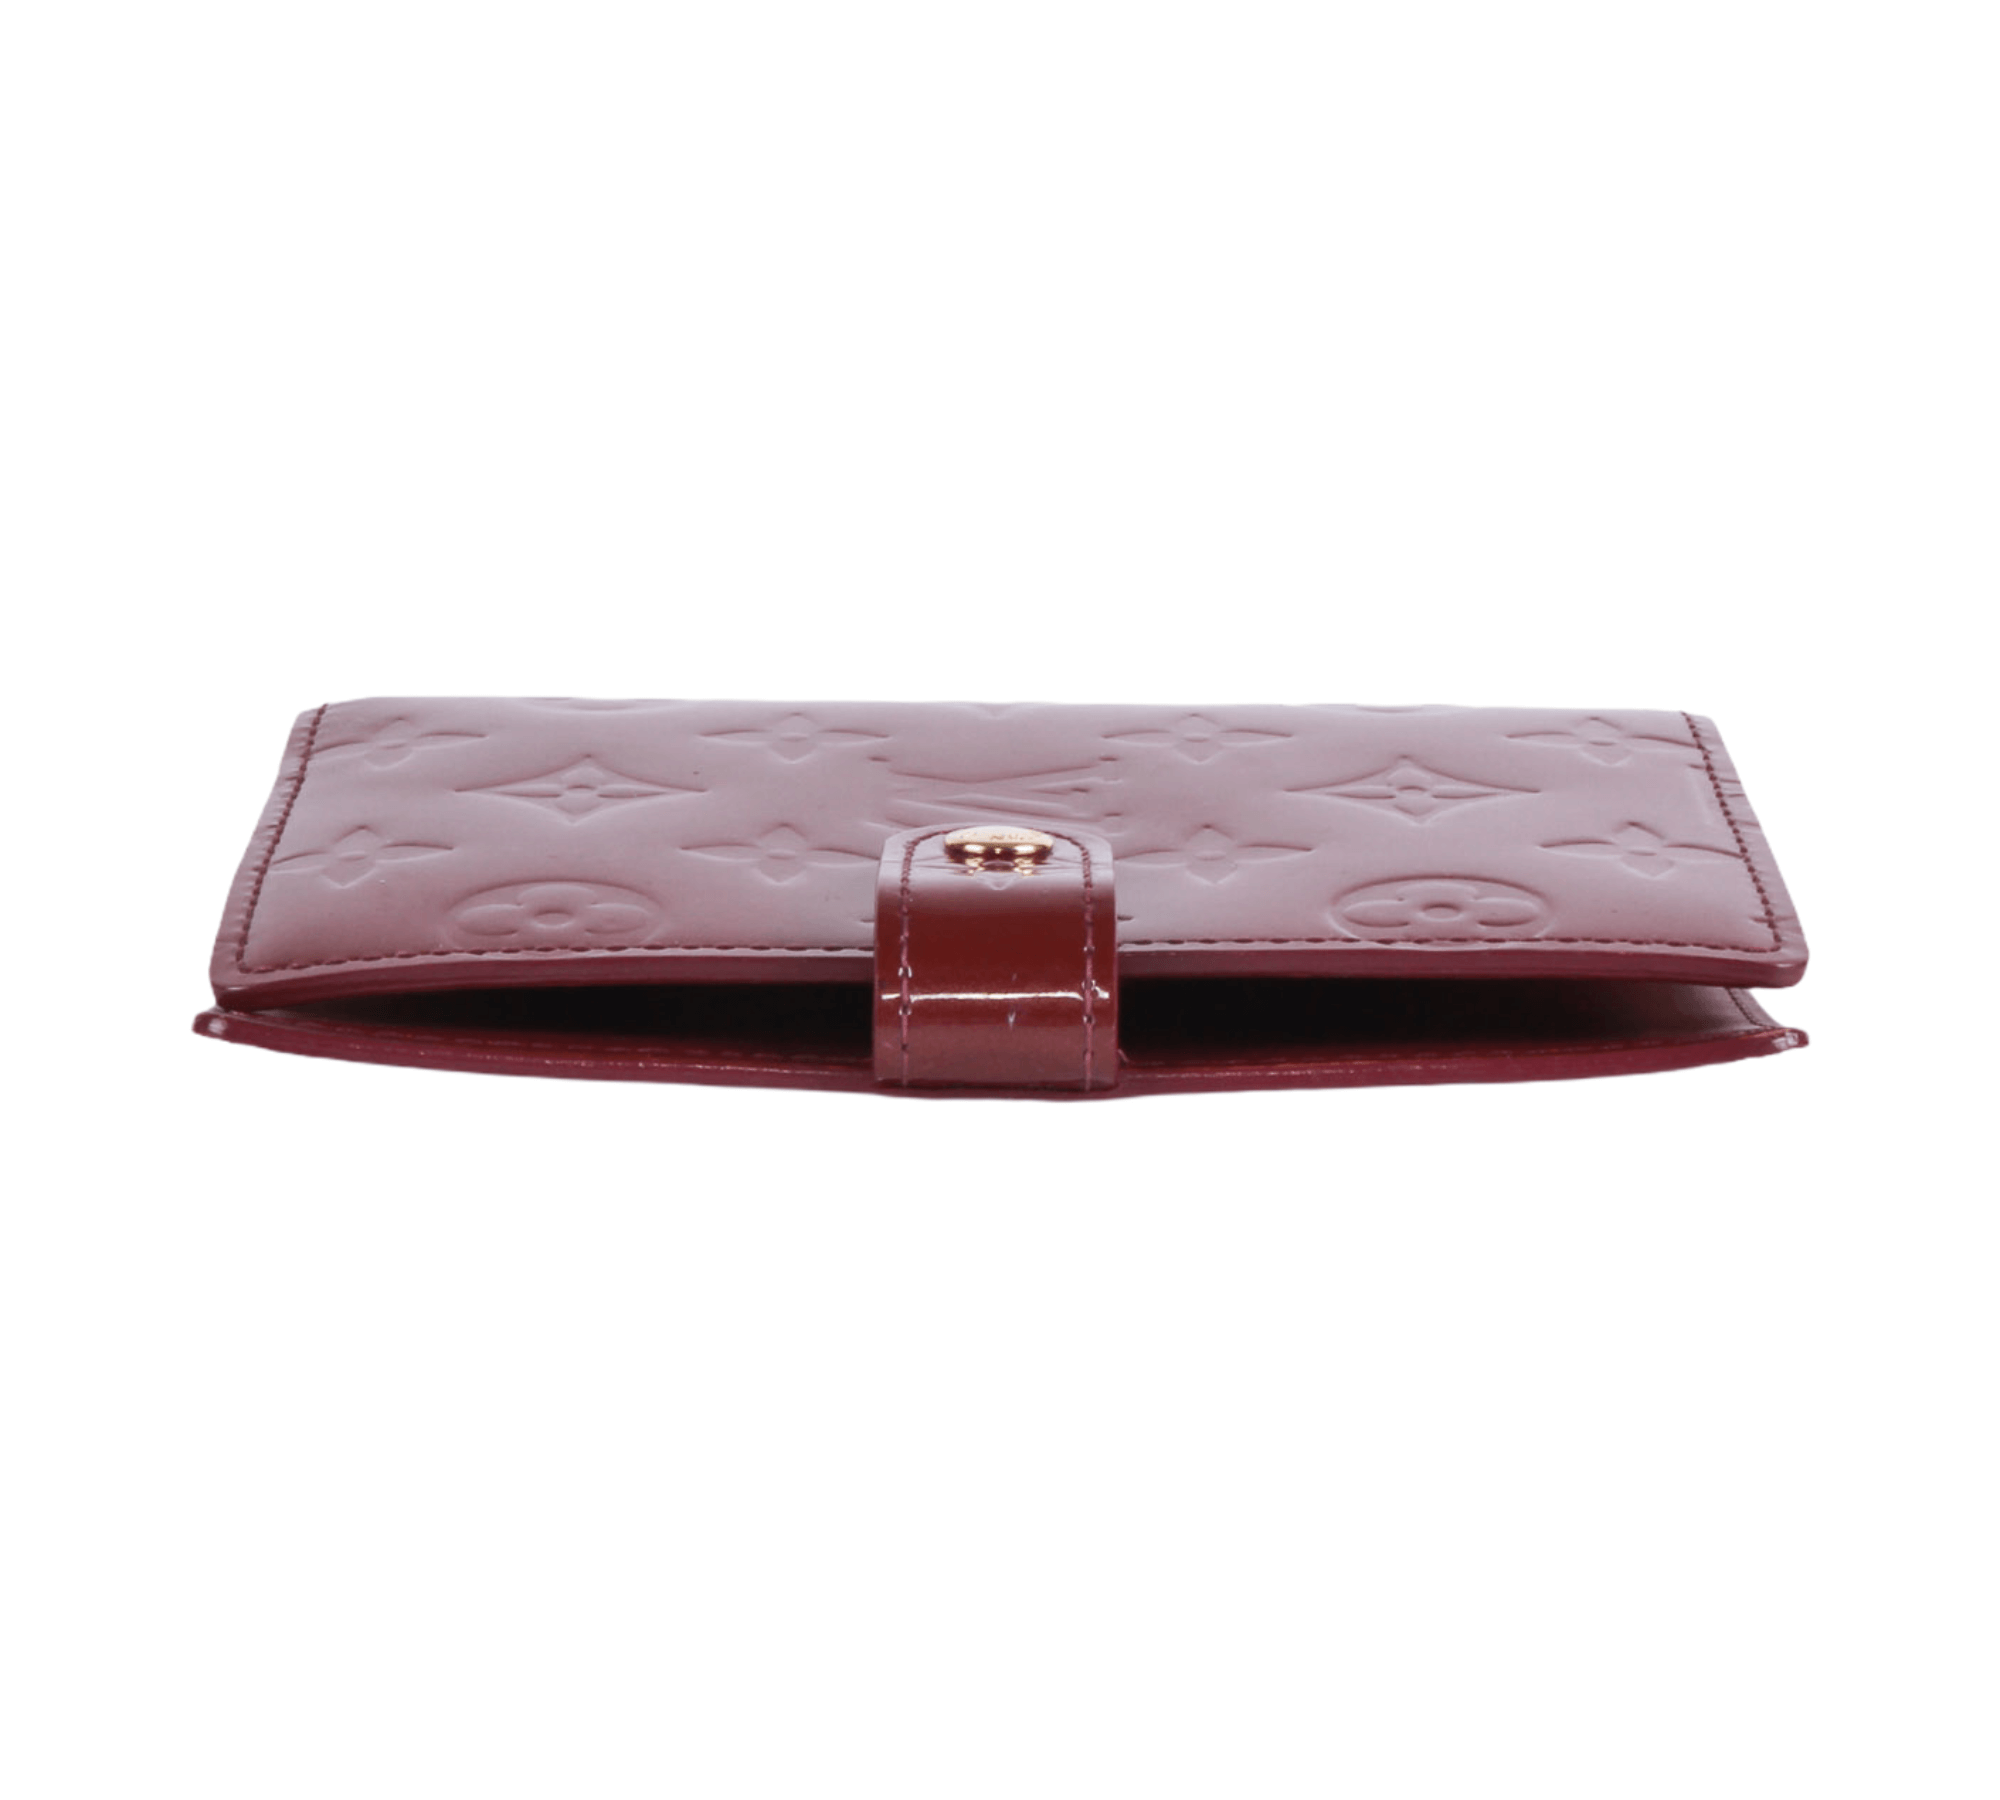 Louis Vuitton Purple Vernis Monogram Leather Agenda Cover